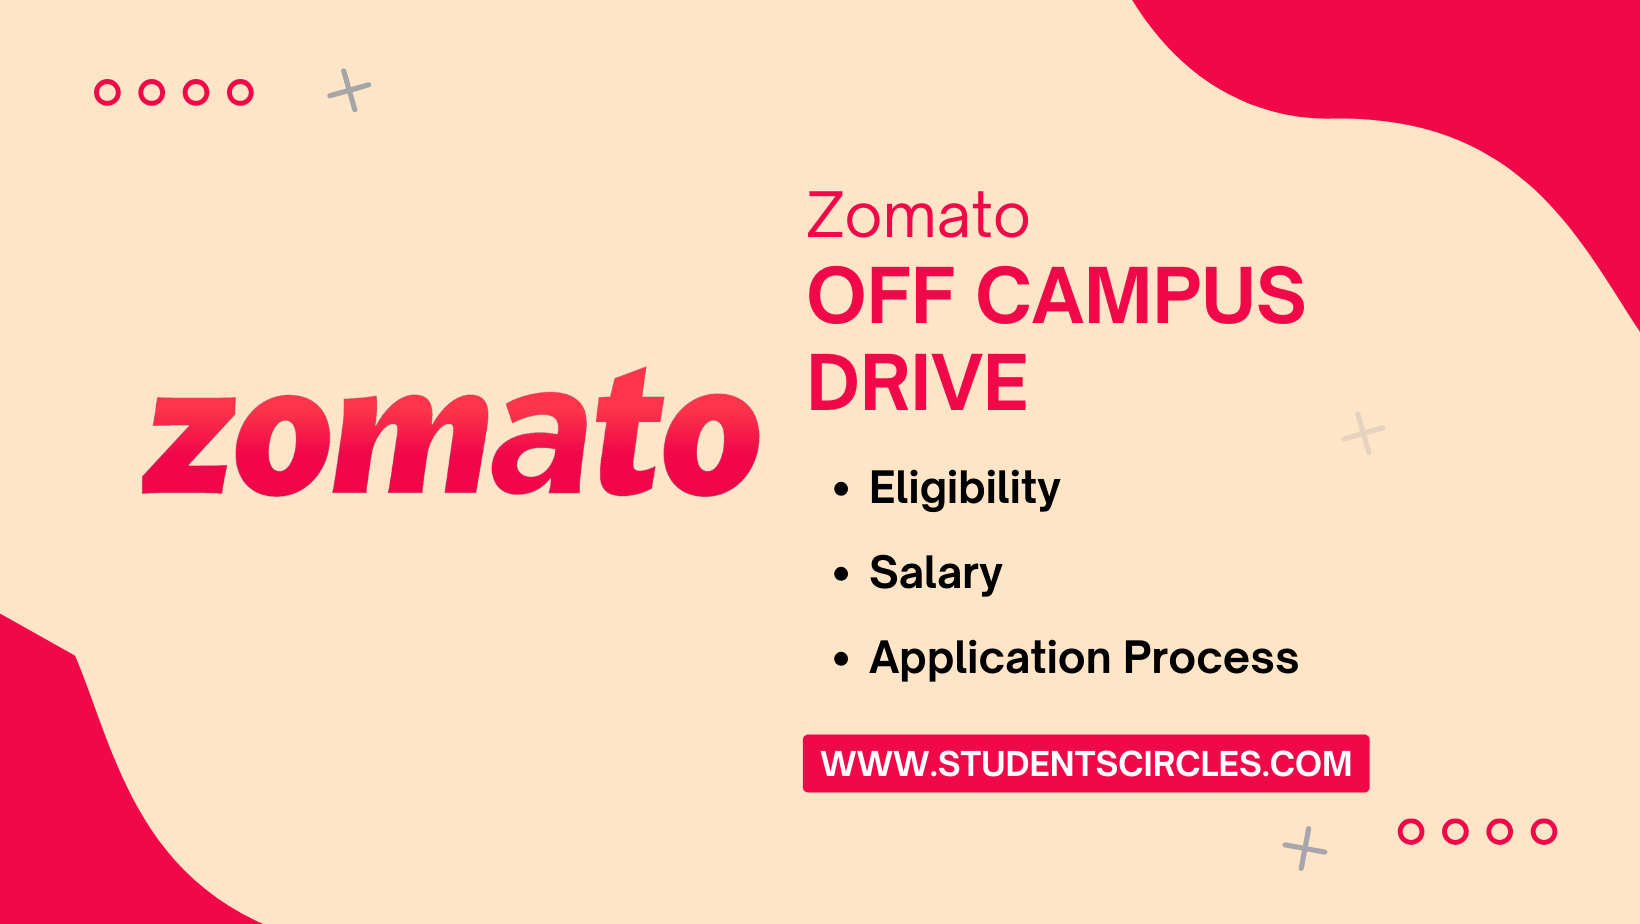 Zomato Off Campus Drive